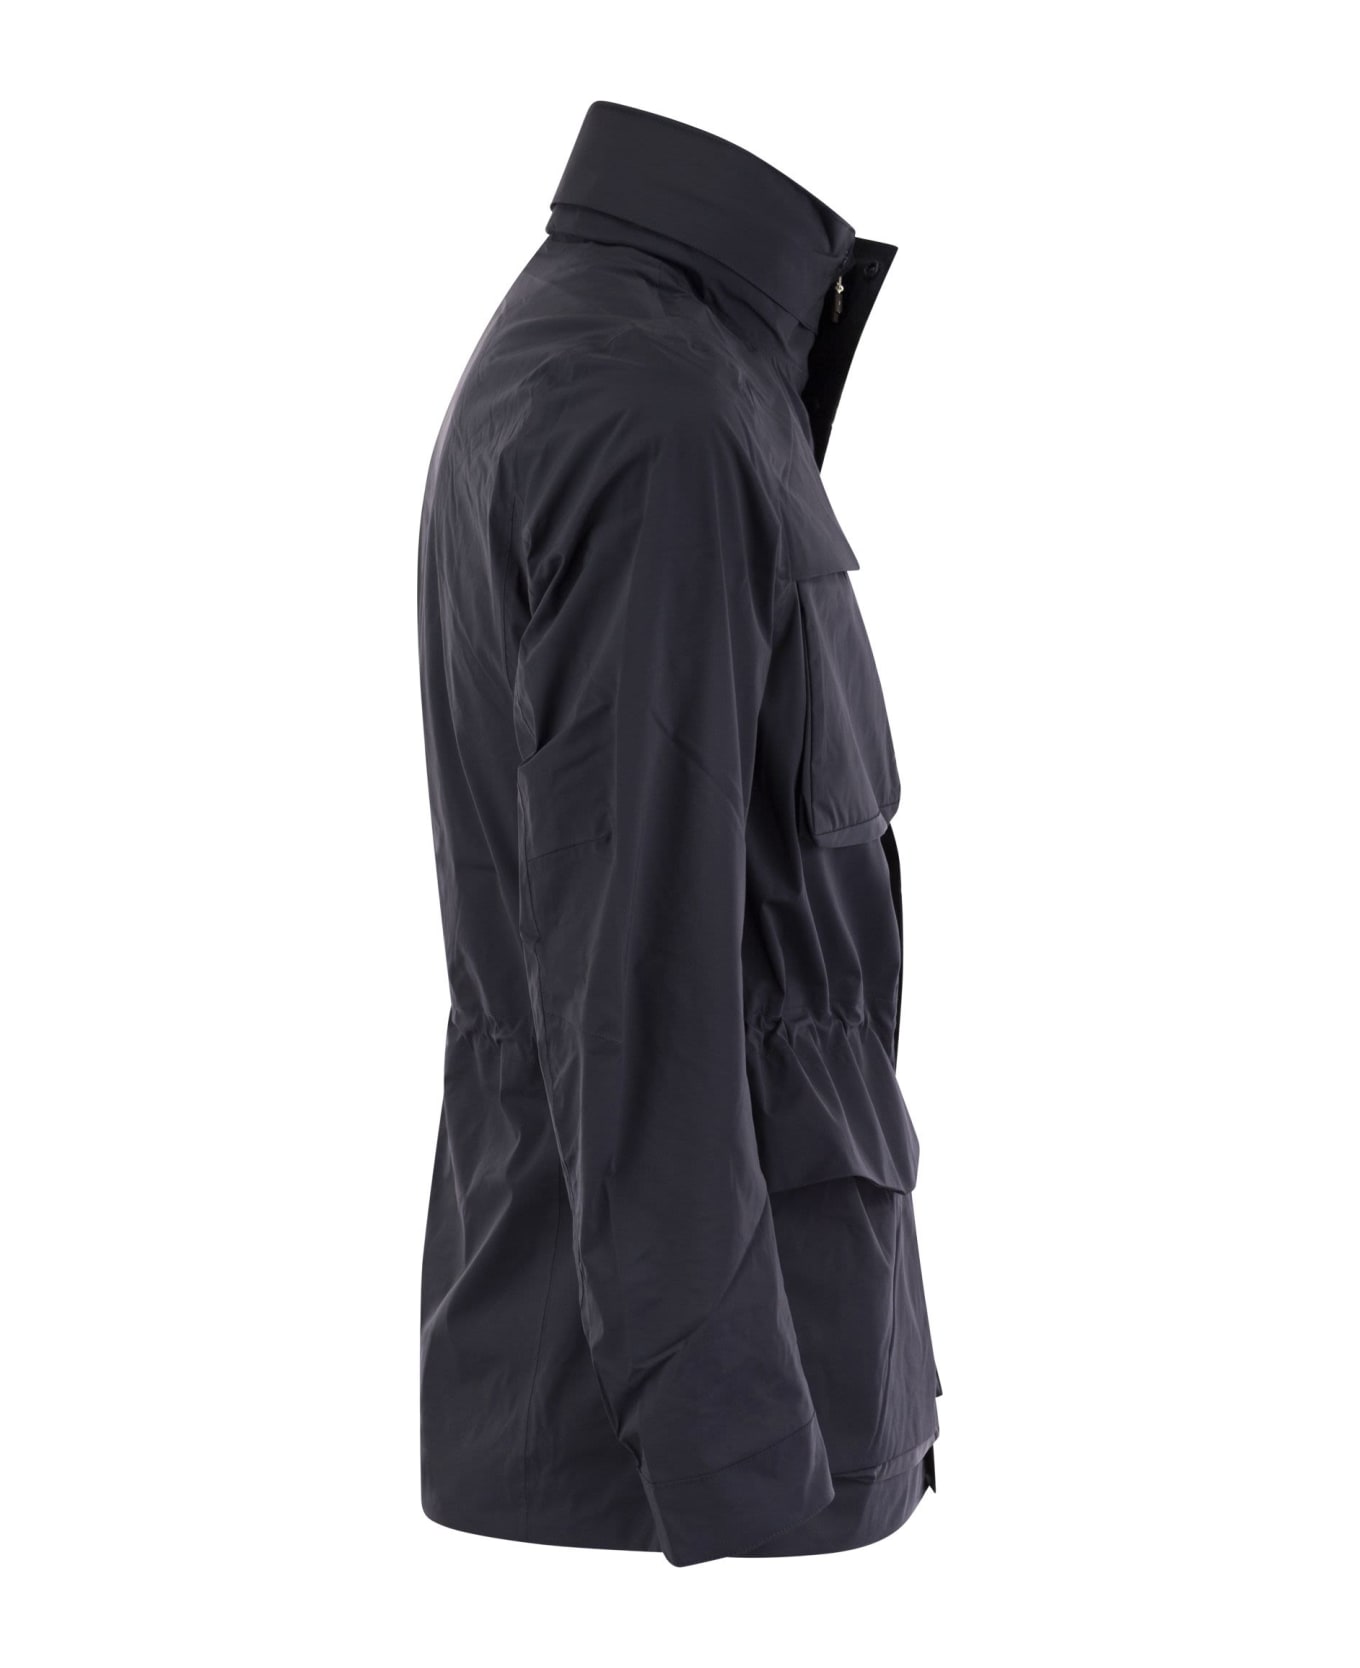 K-Way Manfield Jacket In Waterproof Fabric Jacket - Blue Depth